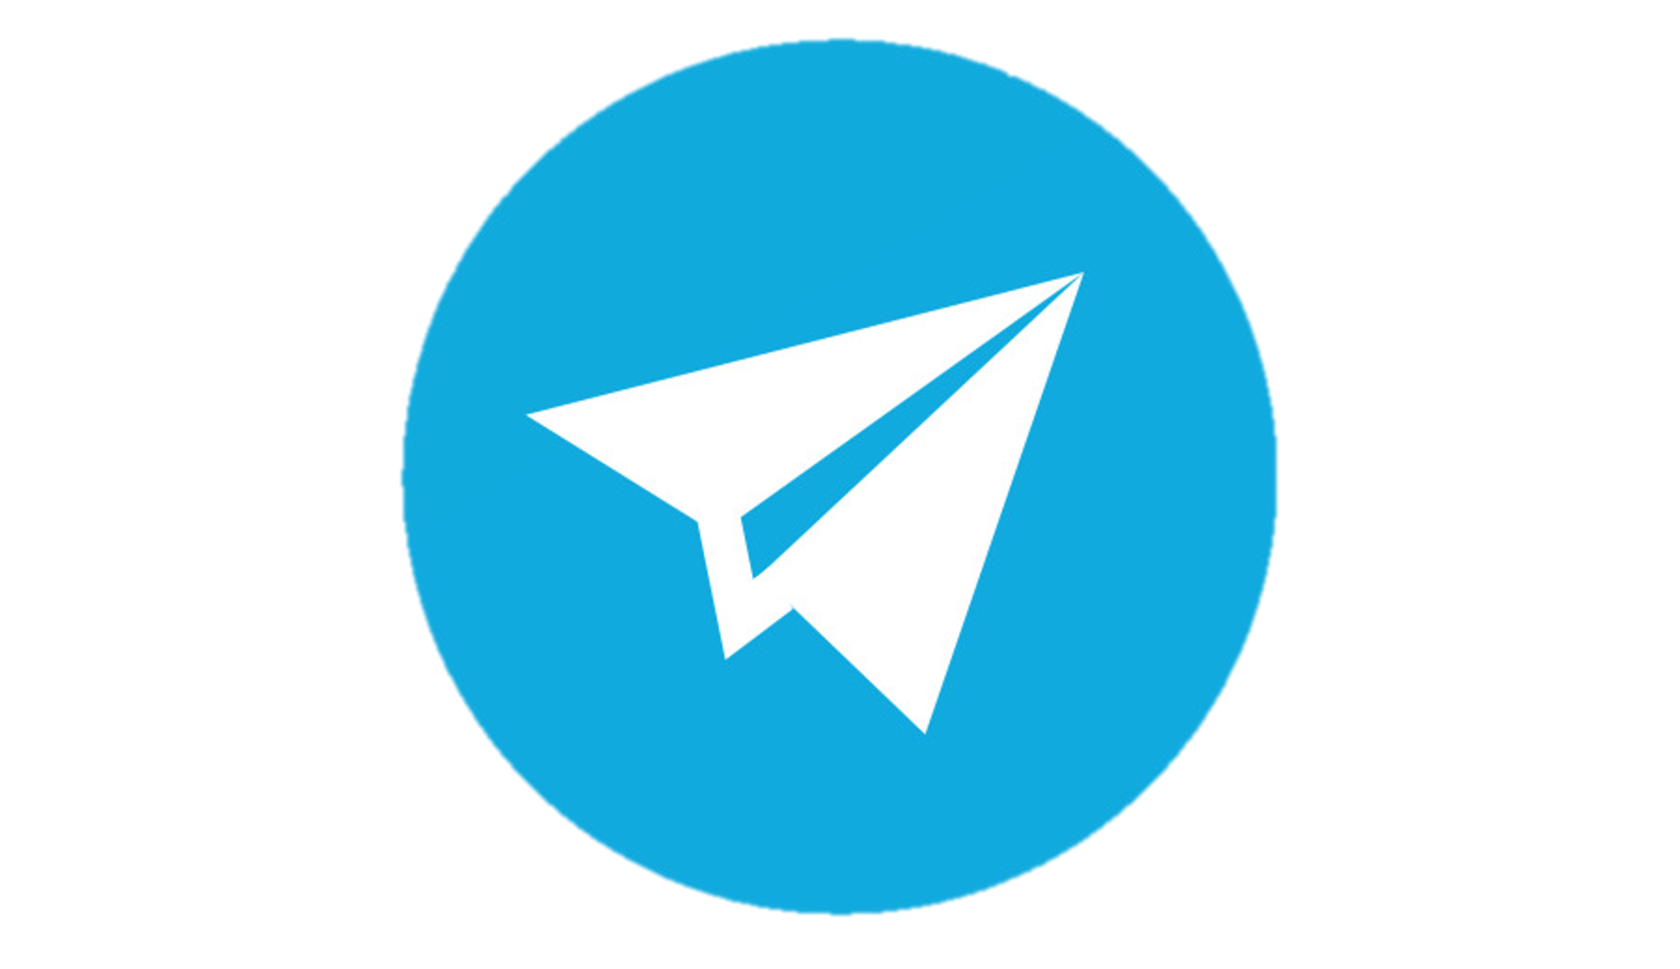 Модерн телеграм. Телеграмм лого. Значок Telegram. Телега логотип. Телеграмм без фона.